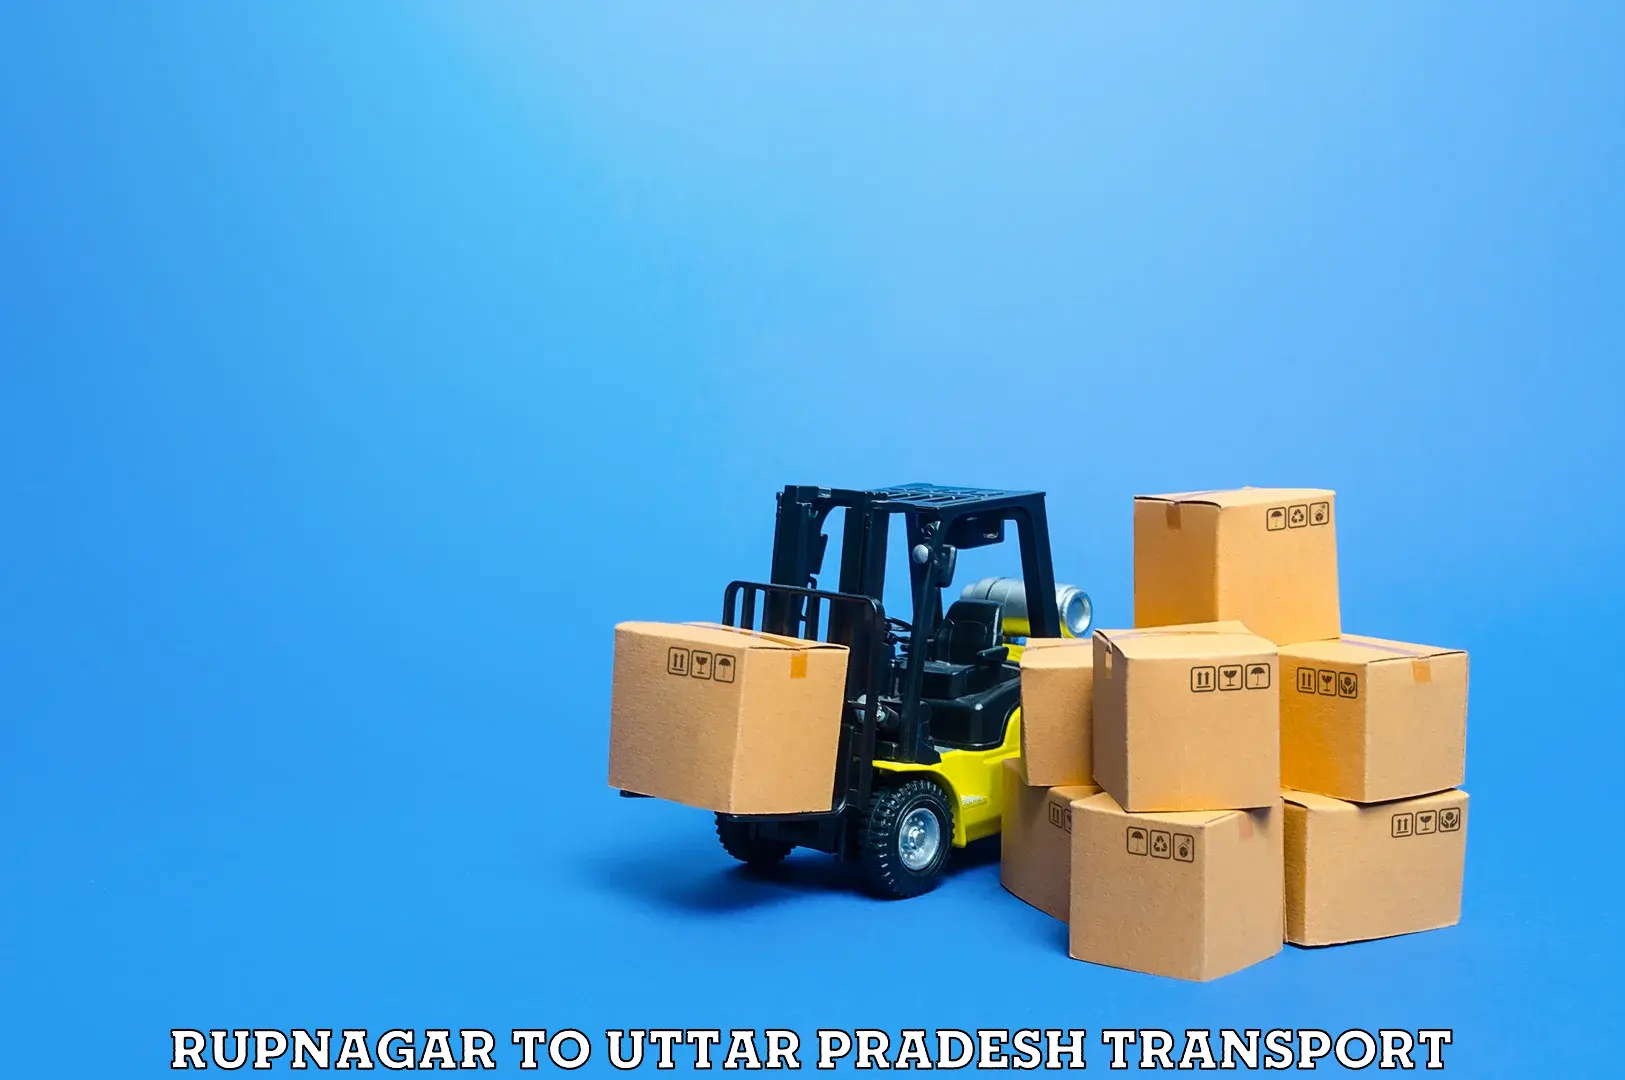 Daily transport service Rupnagar to Baghpat